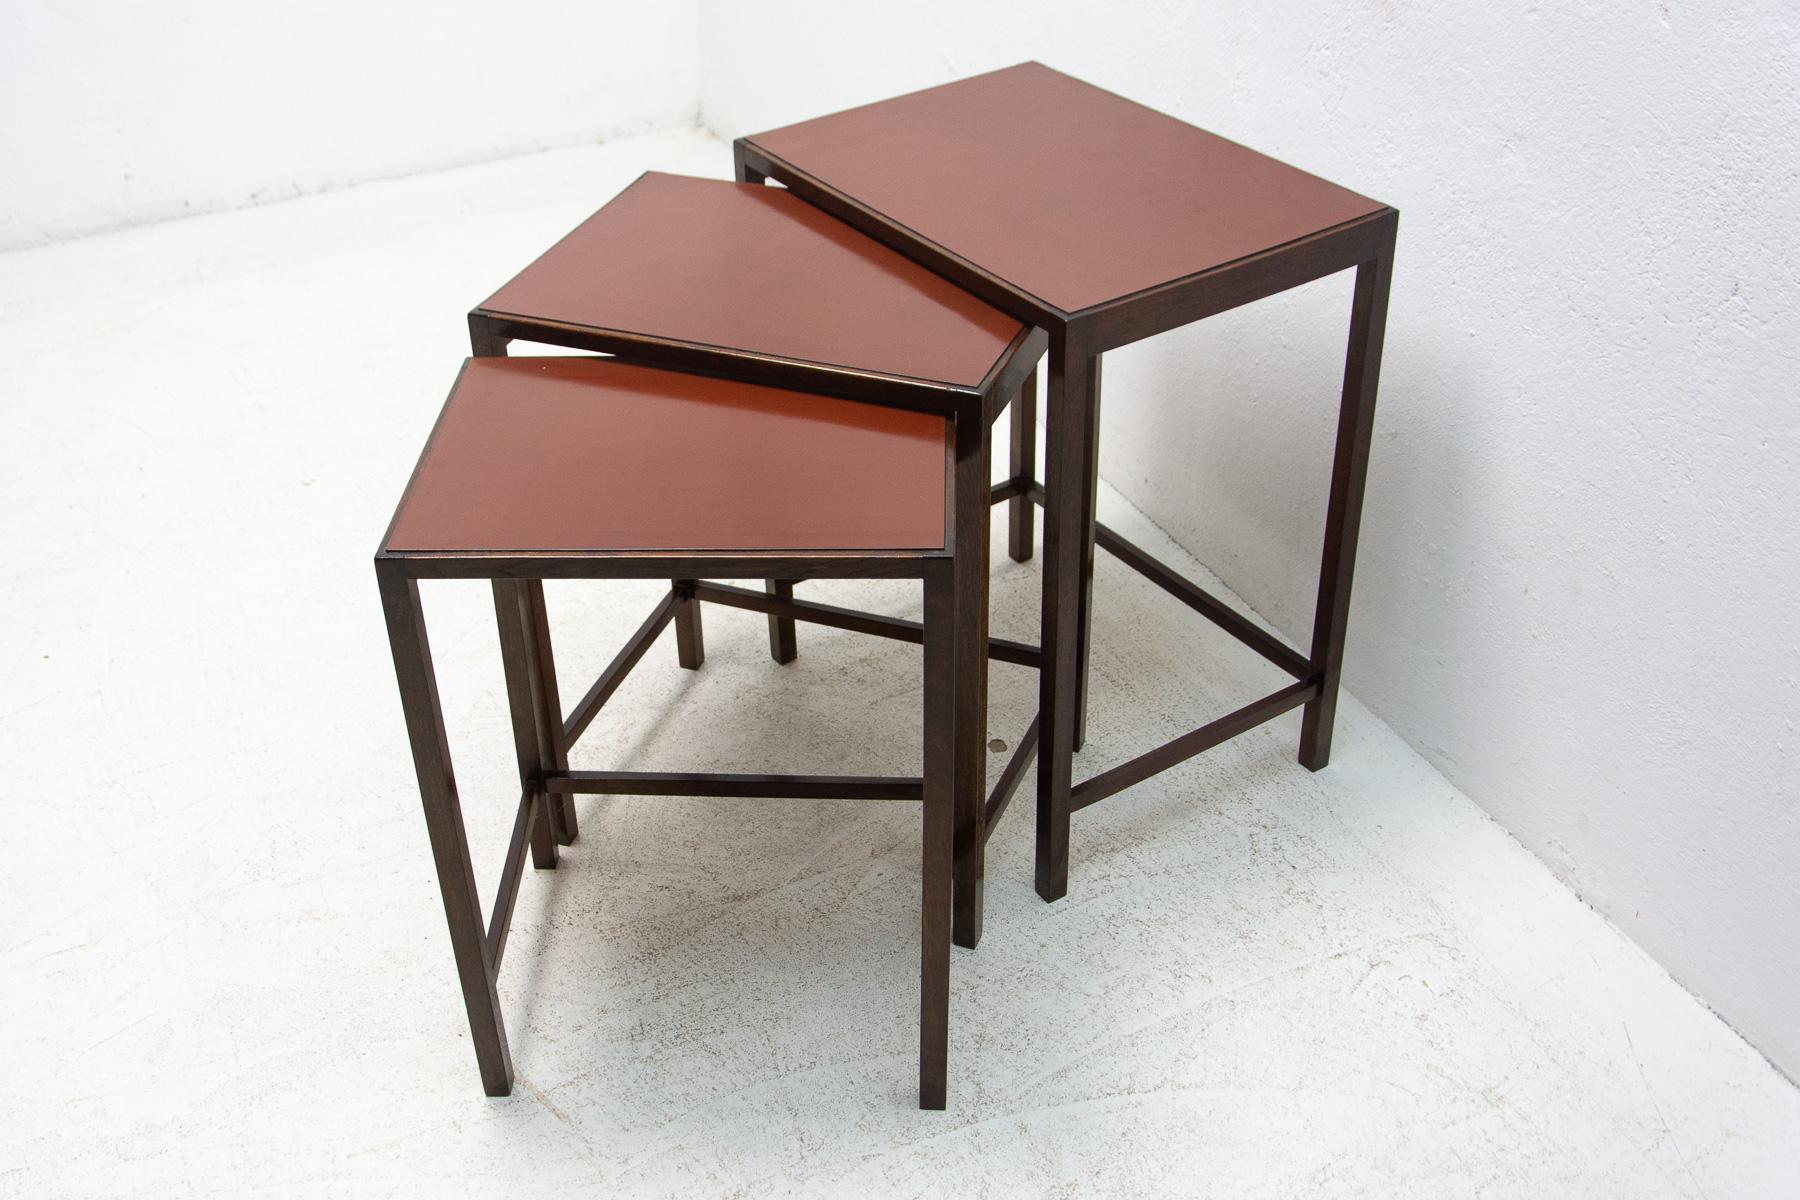 Jindrich Halabala, ensemble de trois tables gigognes n° de catalogue H-50. H-50, conçu dans les années 1930 et produit dans les années 1950. Il est fabriqué en bois de hêtre teinté et comporte un plateau en bakélite foncé. Il est en très bon état